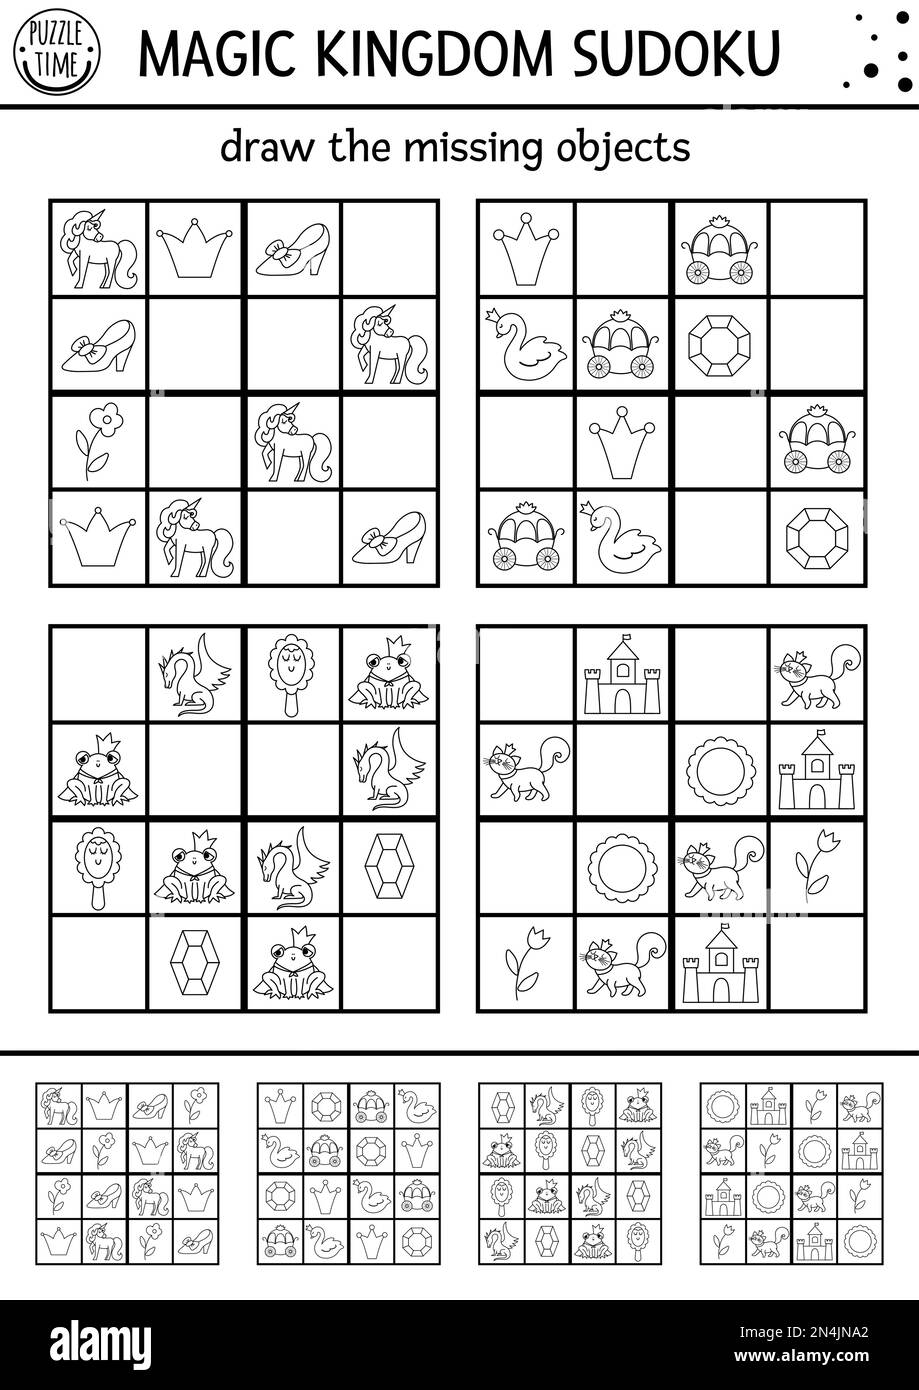 Vector märchenhaftes Sudoku-Puzzle für Kinder mit Bildern. Einfache Zeile magisches Königreich Quiz. Lernaktivität oder Malseite mit Drachen Stock Vektor